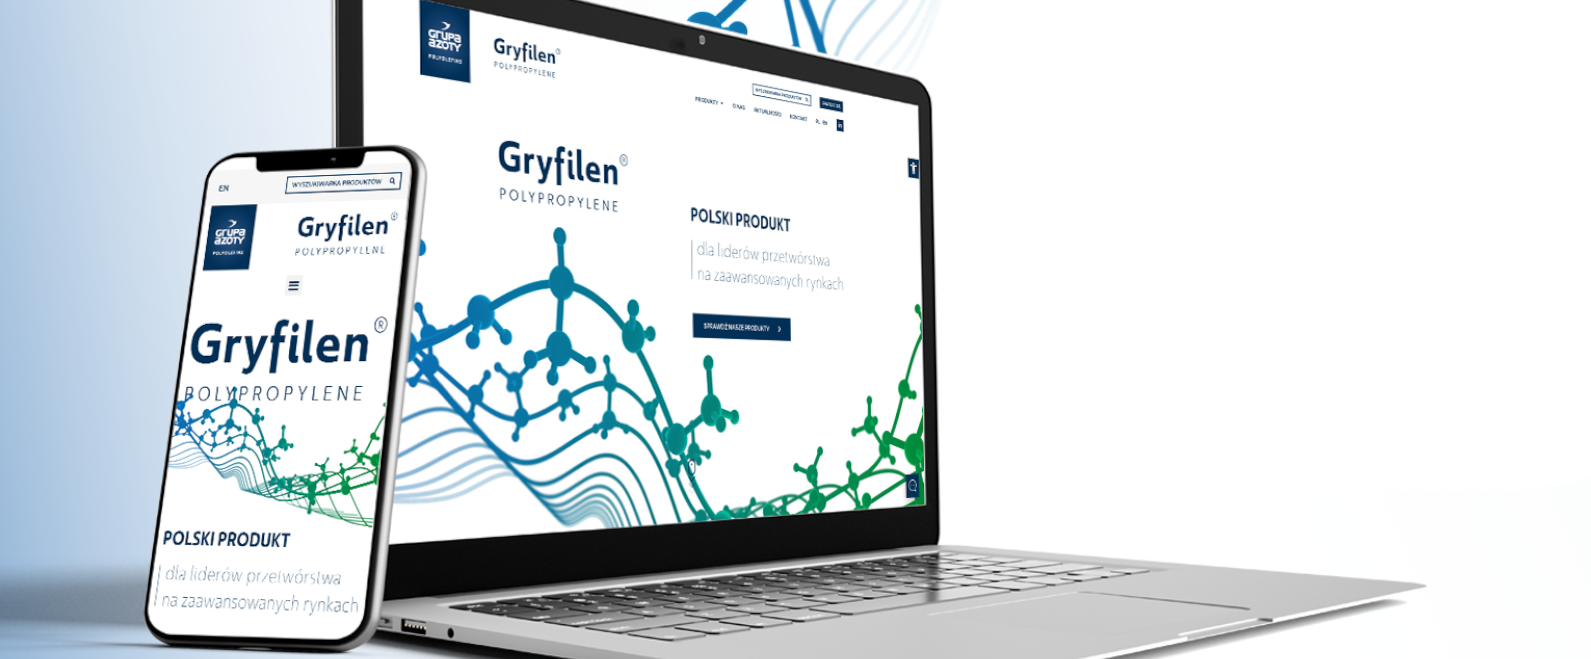 Gryfilen ma swoją stronę Internetową